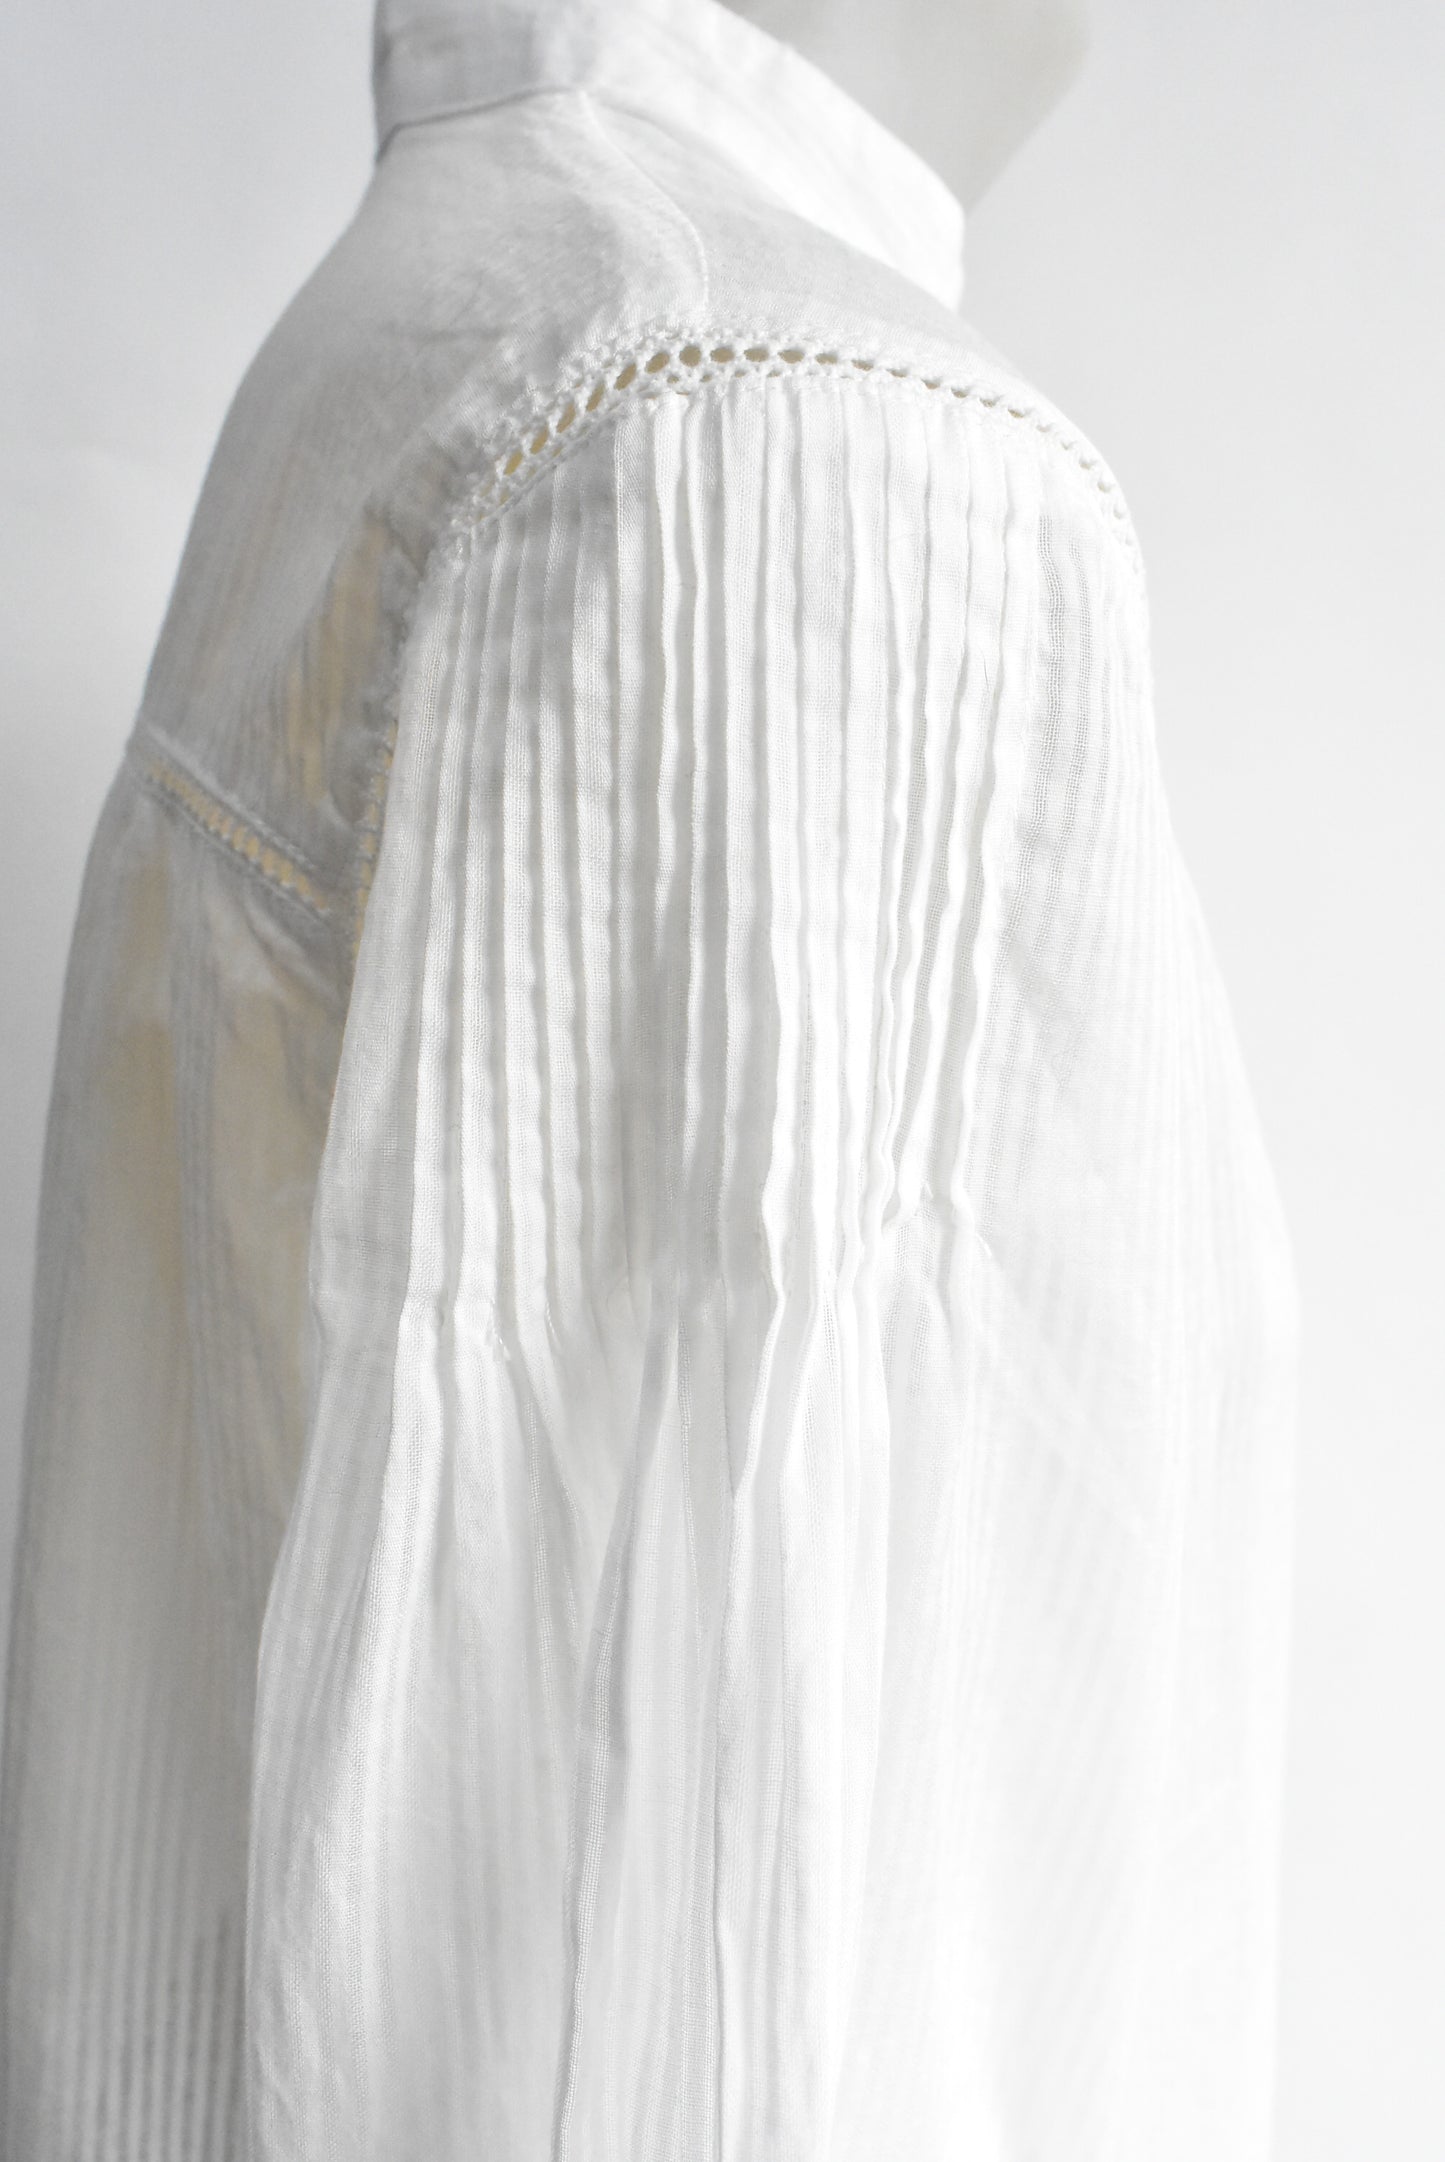 Classique white blouse, 14